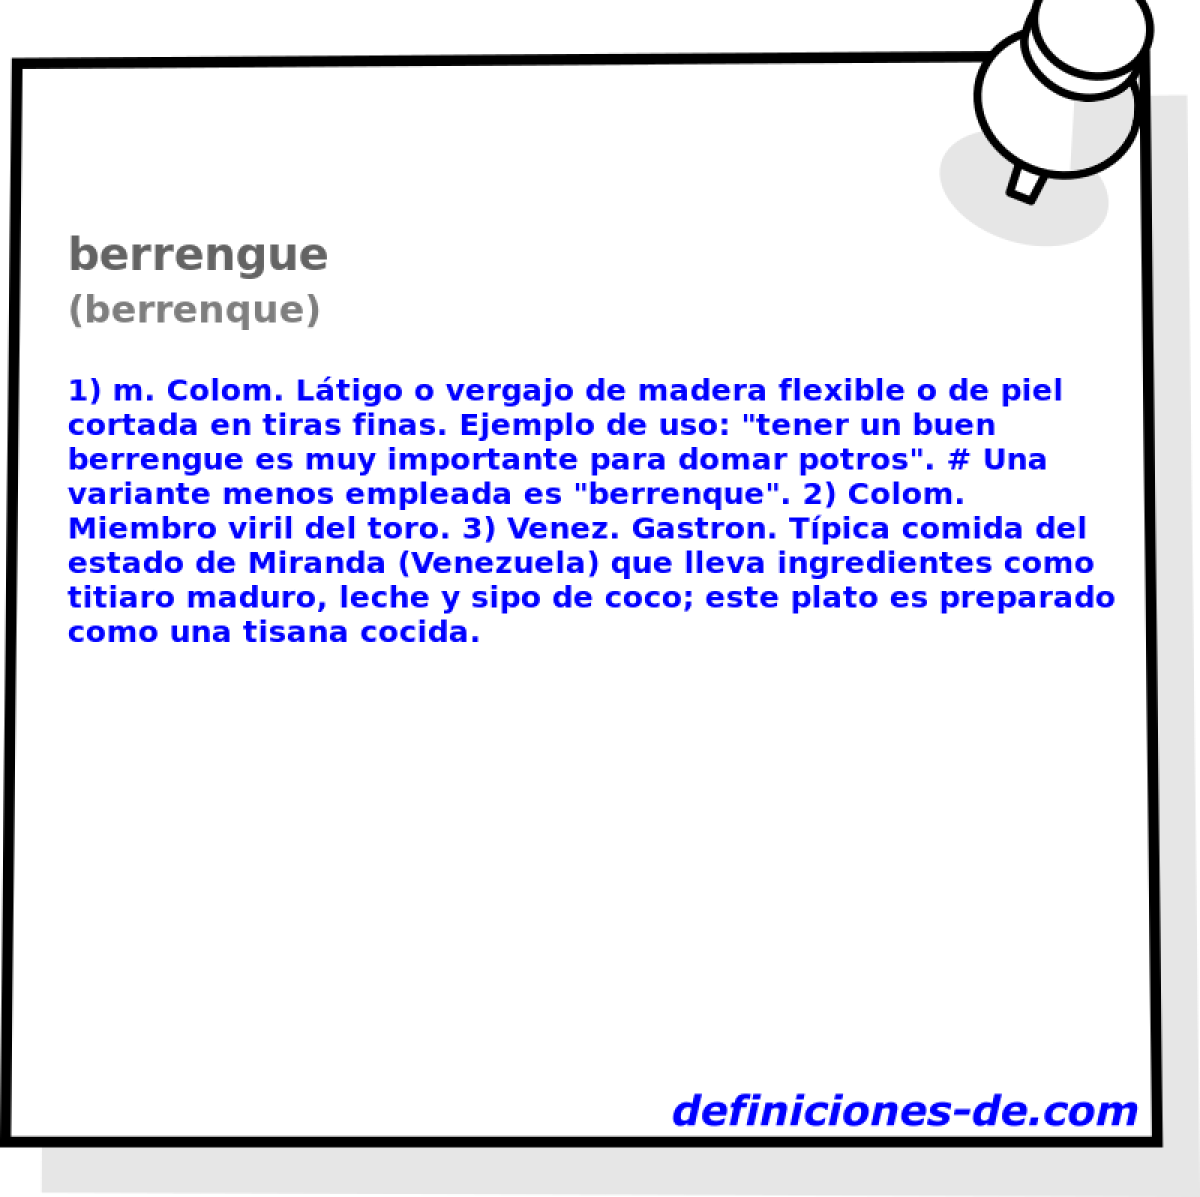 berrengue (berrenque)